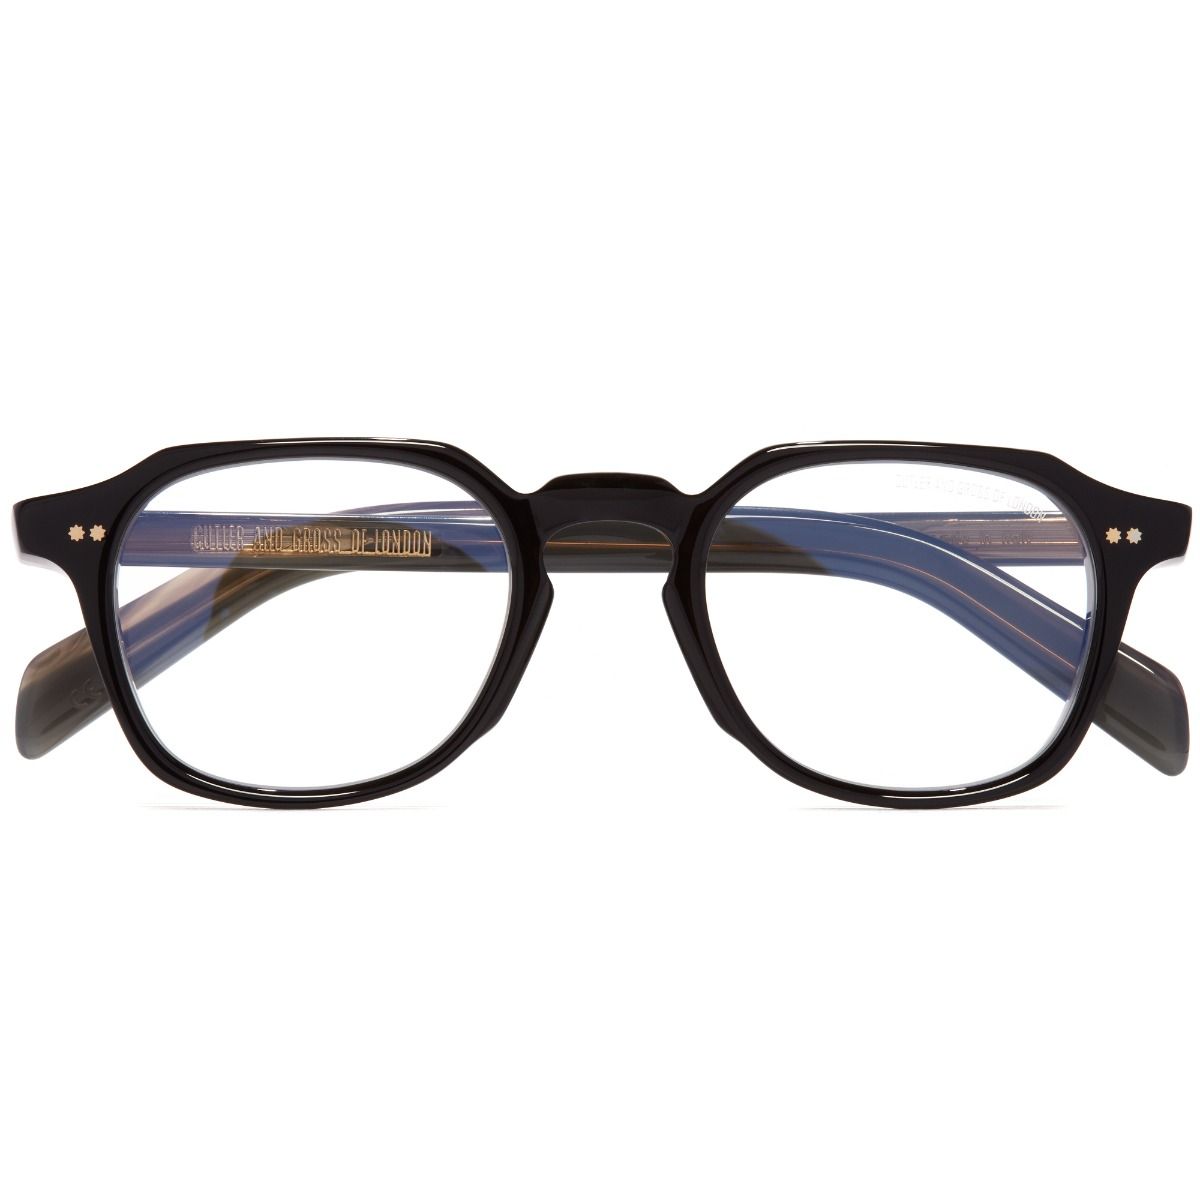 GR03 Square Optical Glasses-Black on Horn